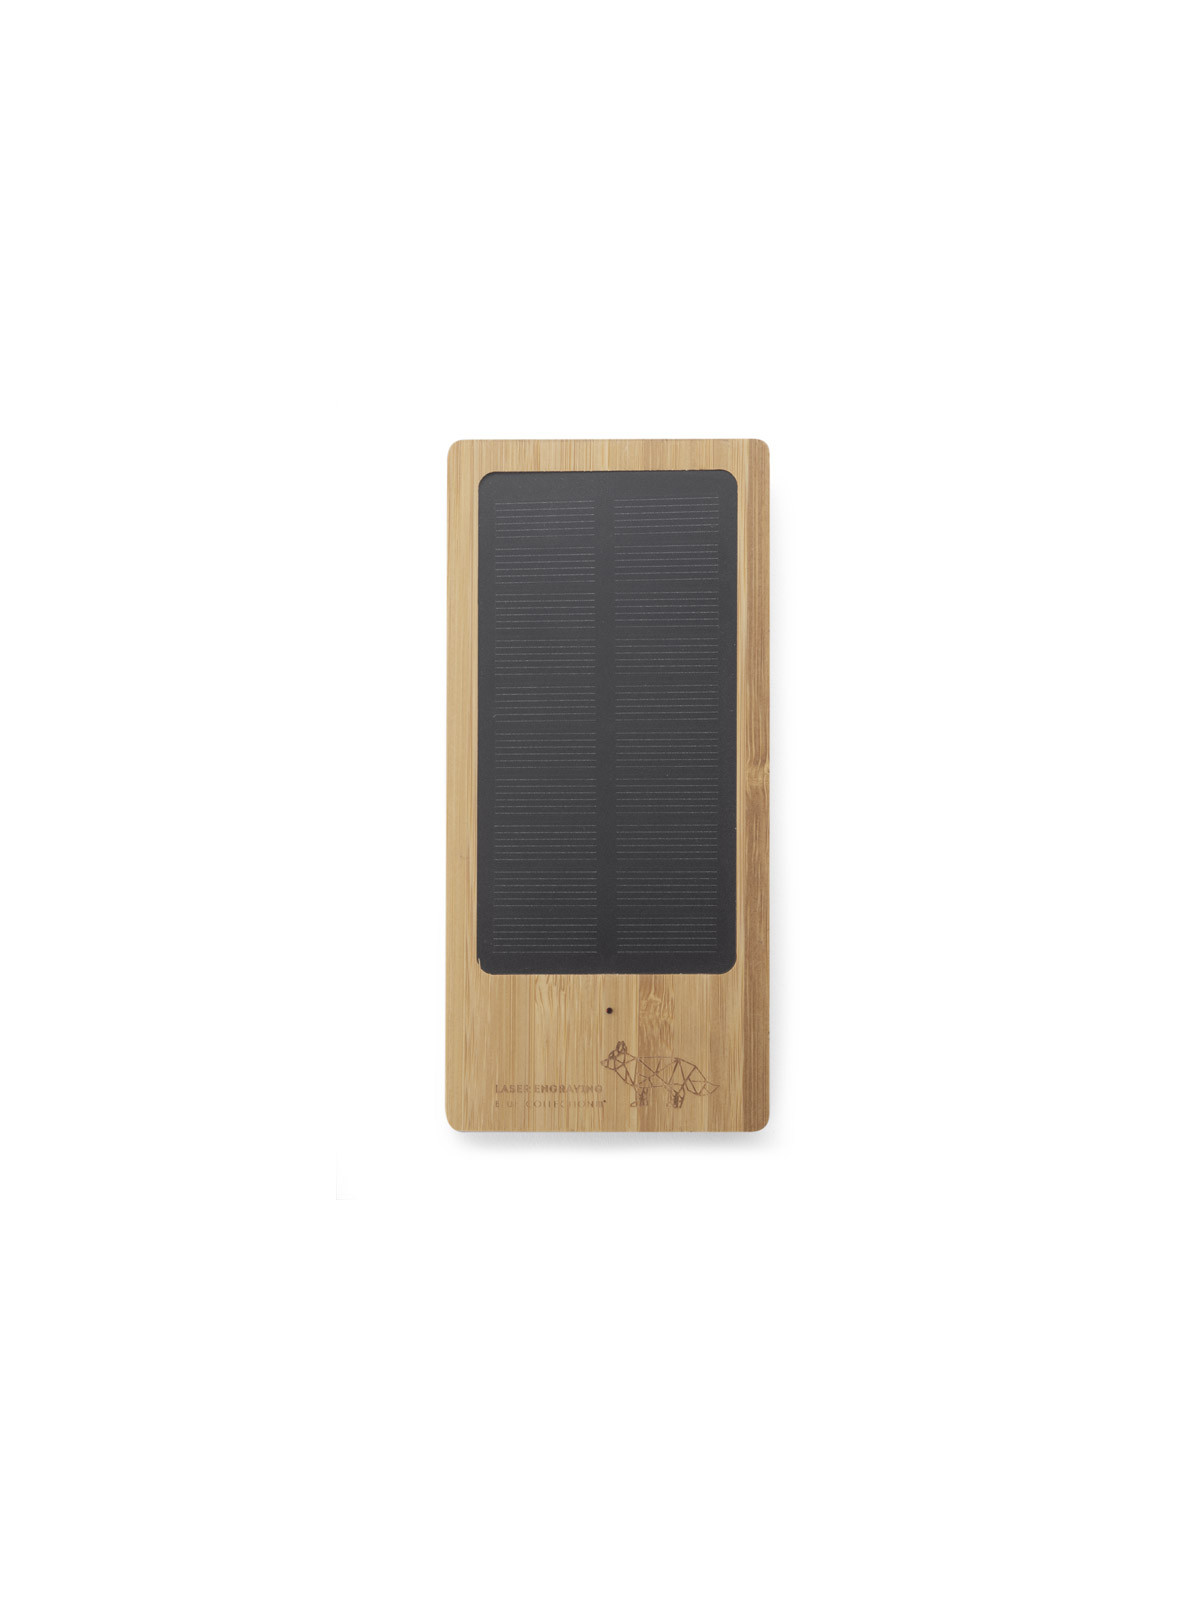 Batterie externe solaire publicitaire en bambou écologique, recharge un téléphone grâce à la lumière du soleil